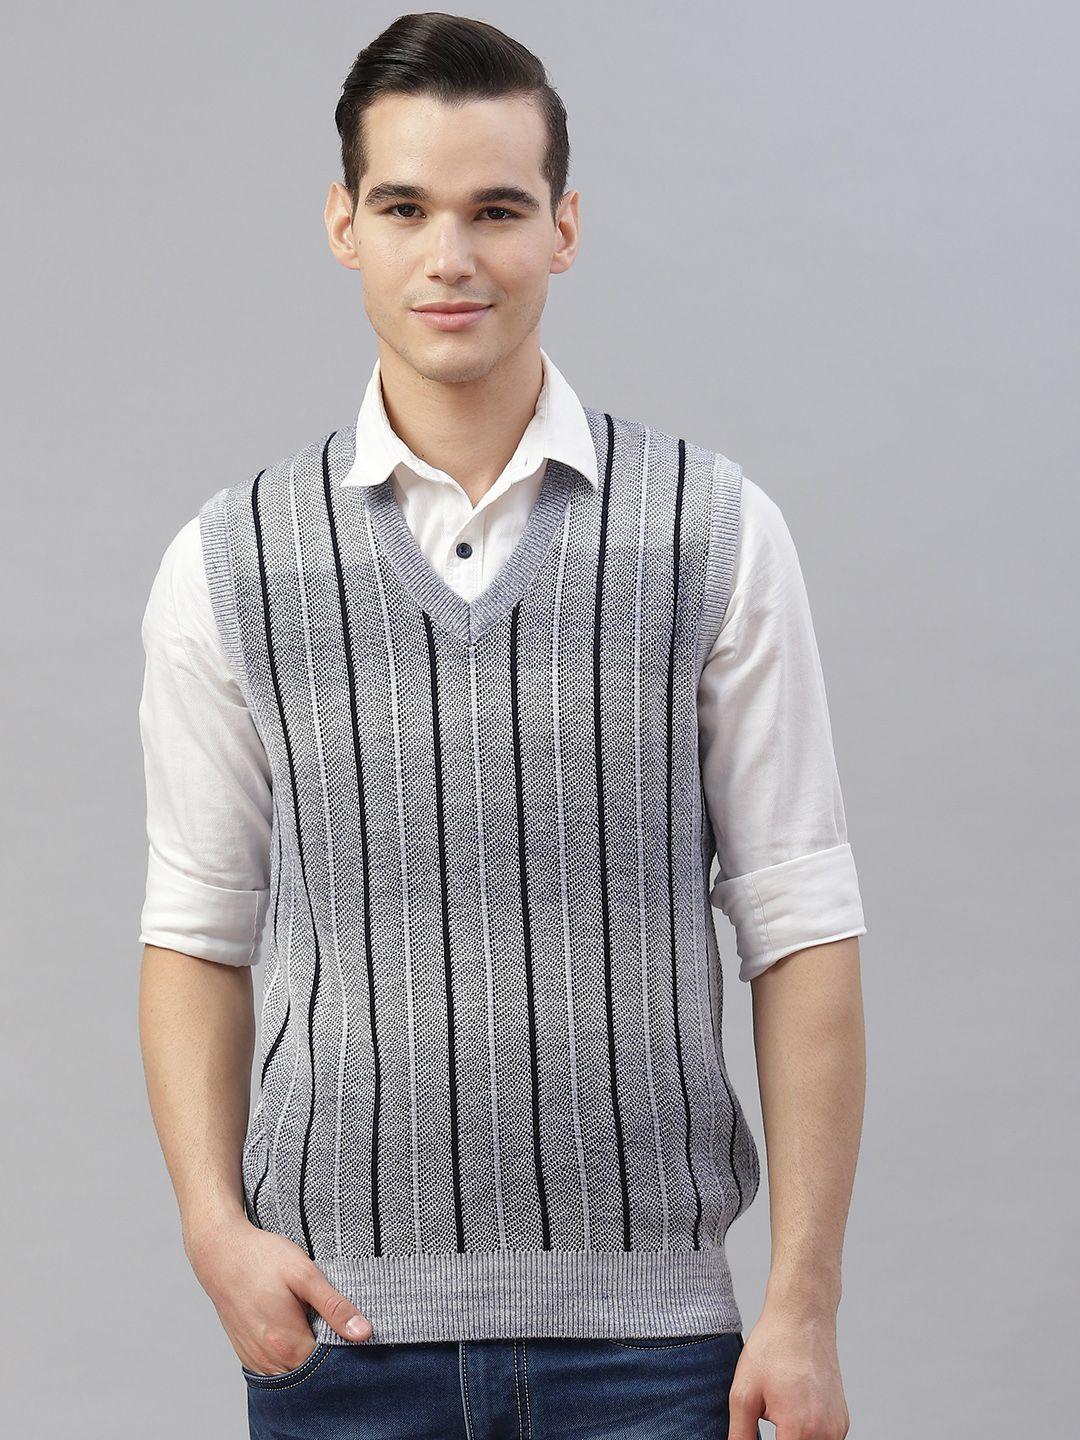 pierre carlo men grey & navy blue striped sweater vest